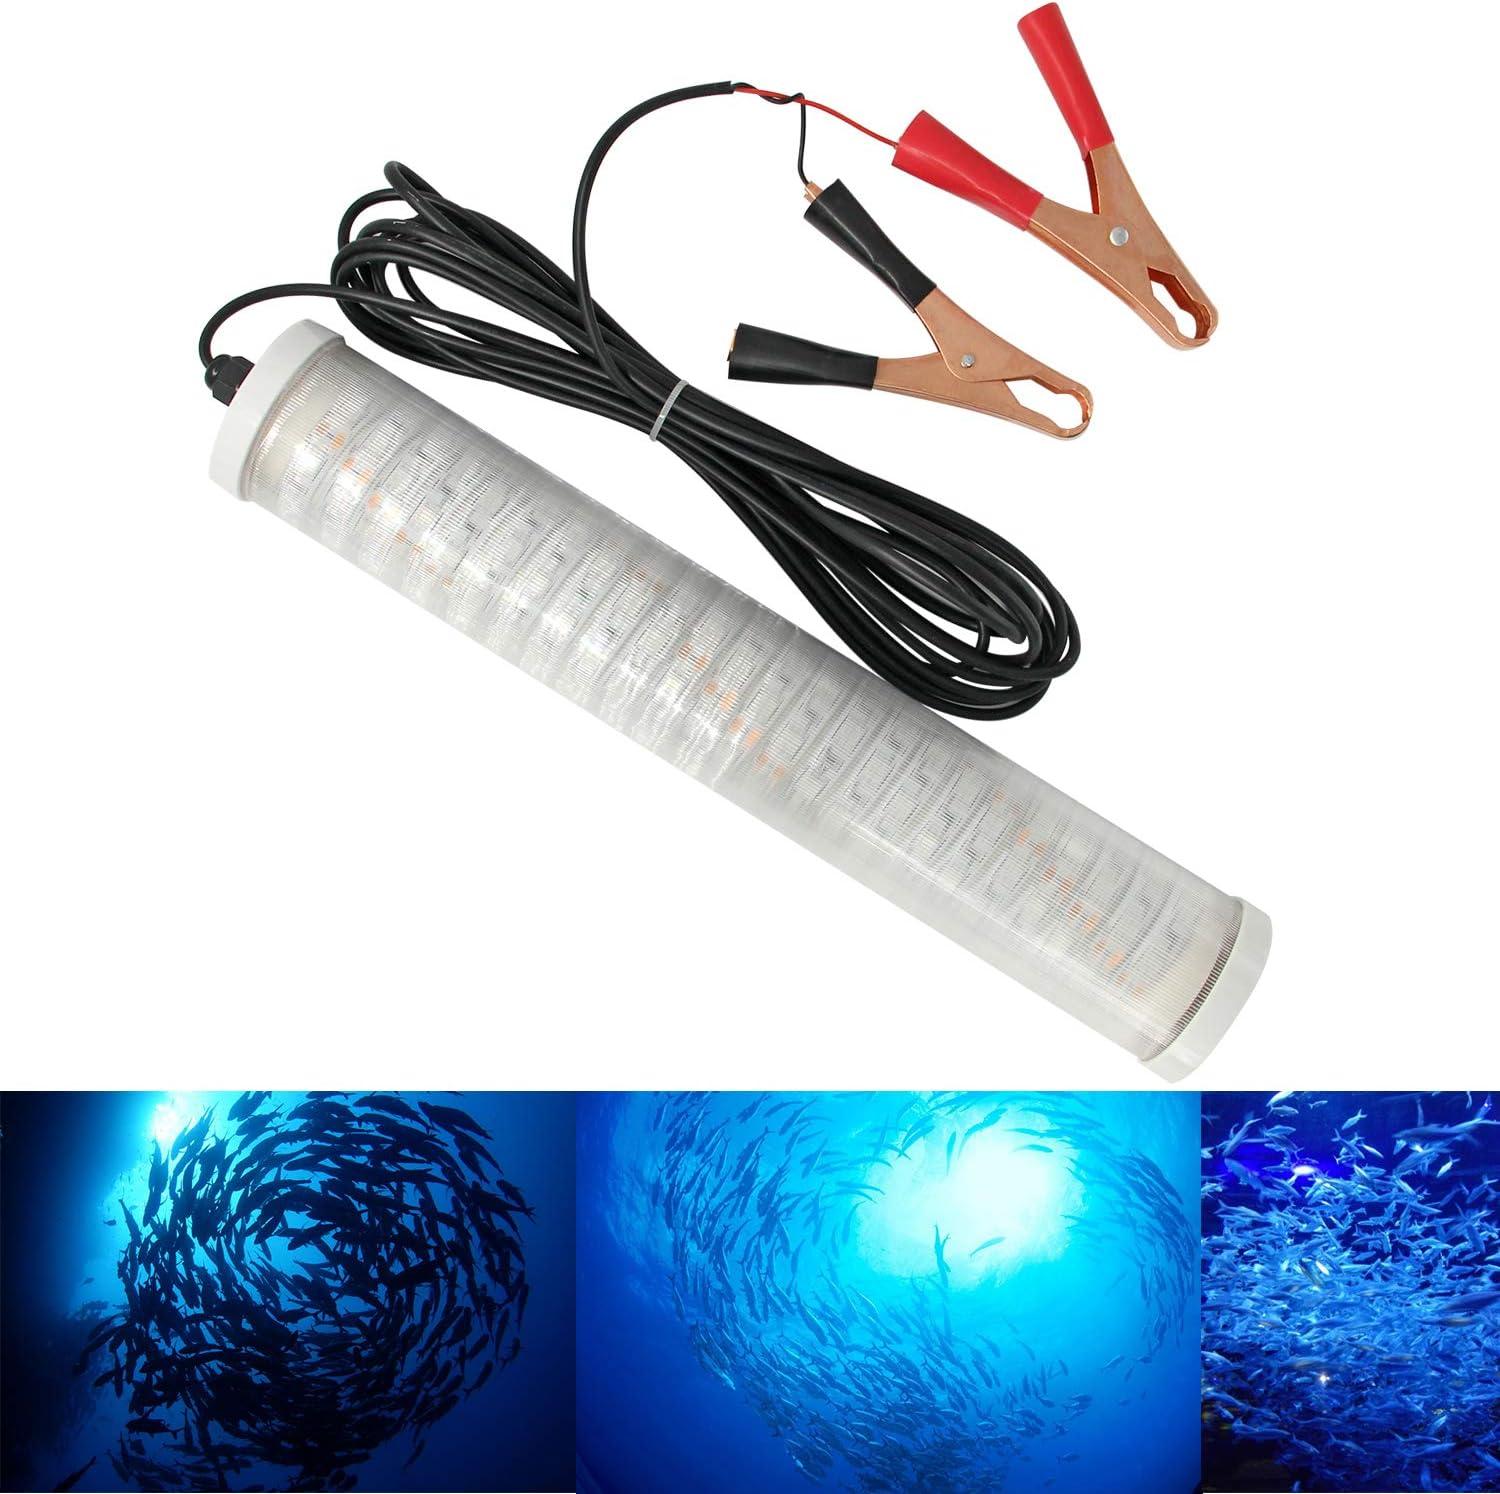 Hanchen LED Underwater Fishing Light, 12V 30W Boat Light for Night